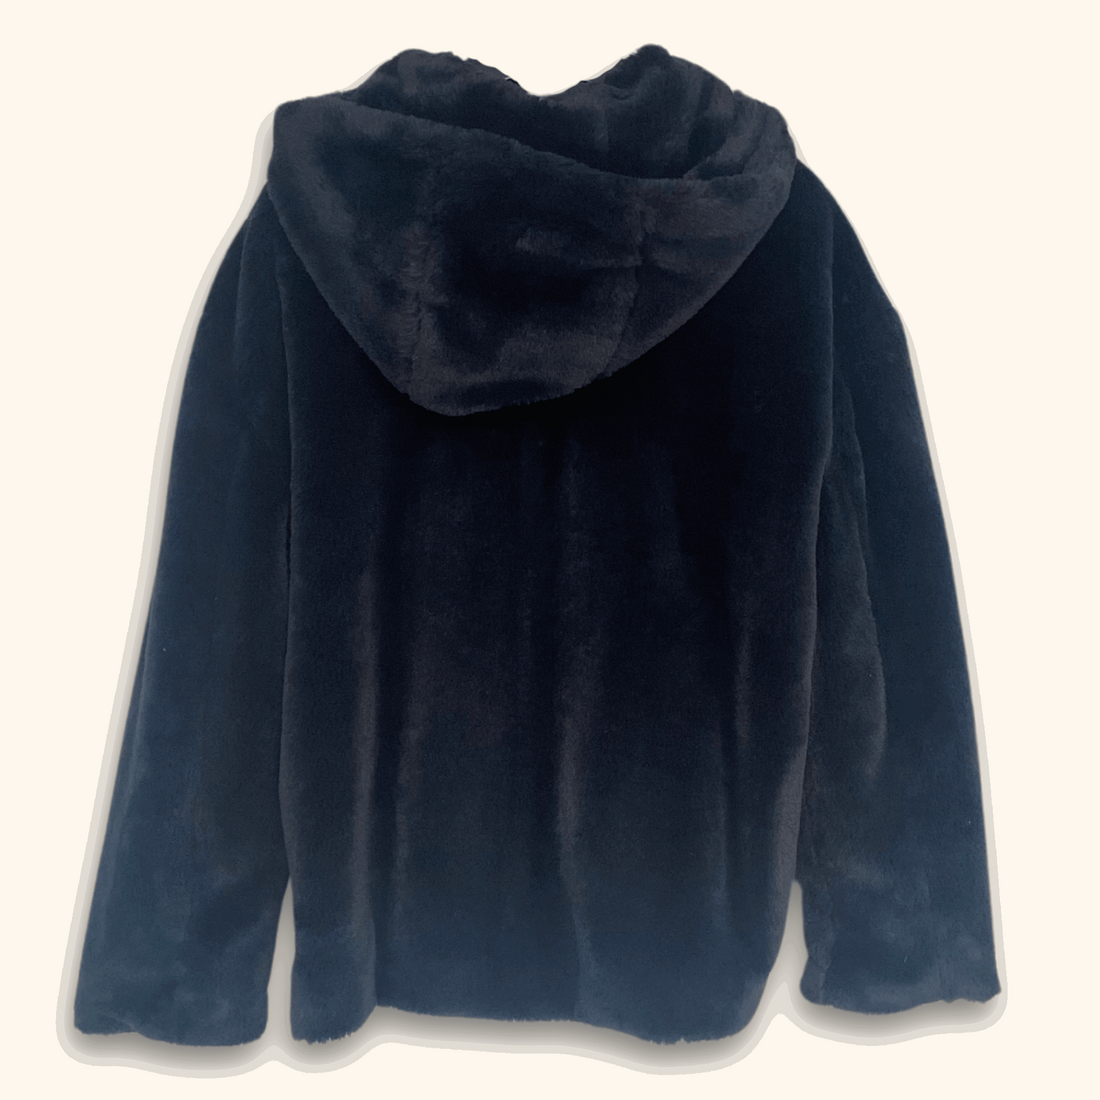 Zara Blue Faux Fur Hooded Coat - Size Small - Zara - Coats &amp; jackets